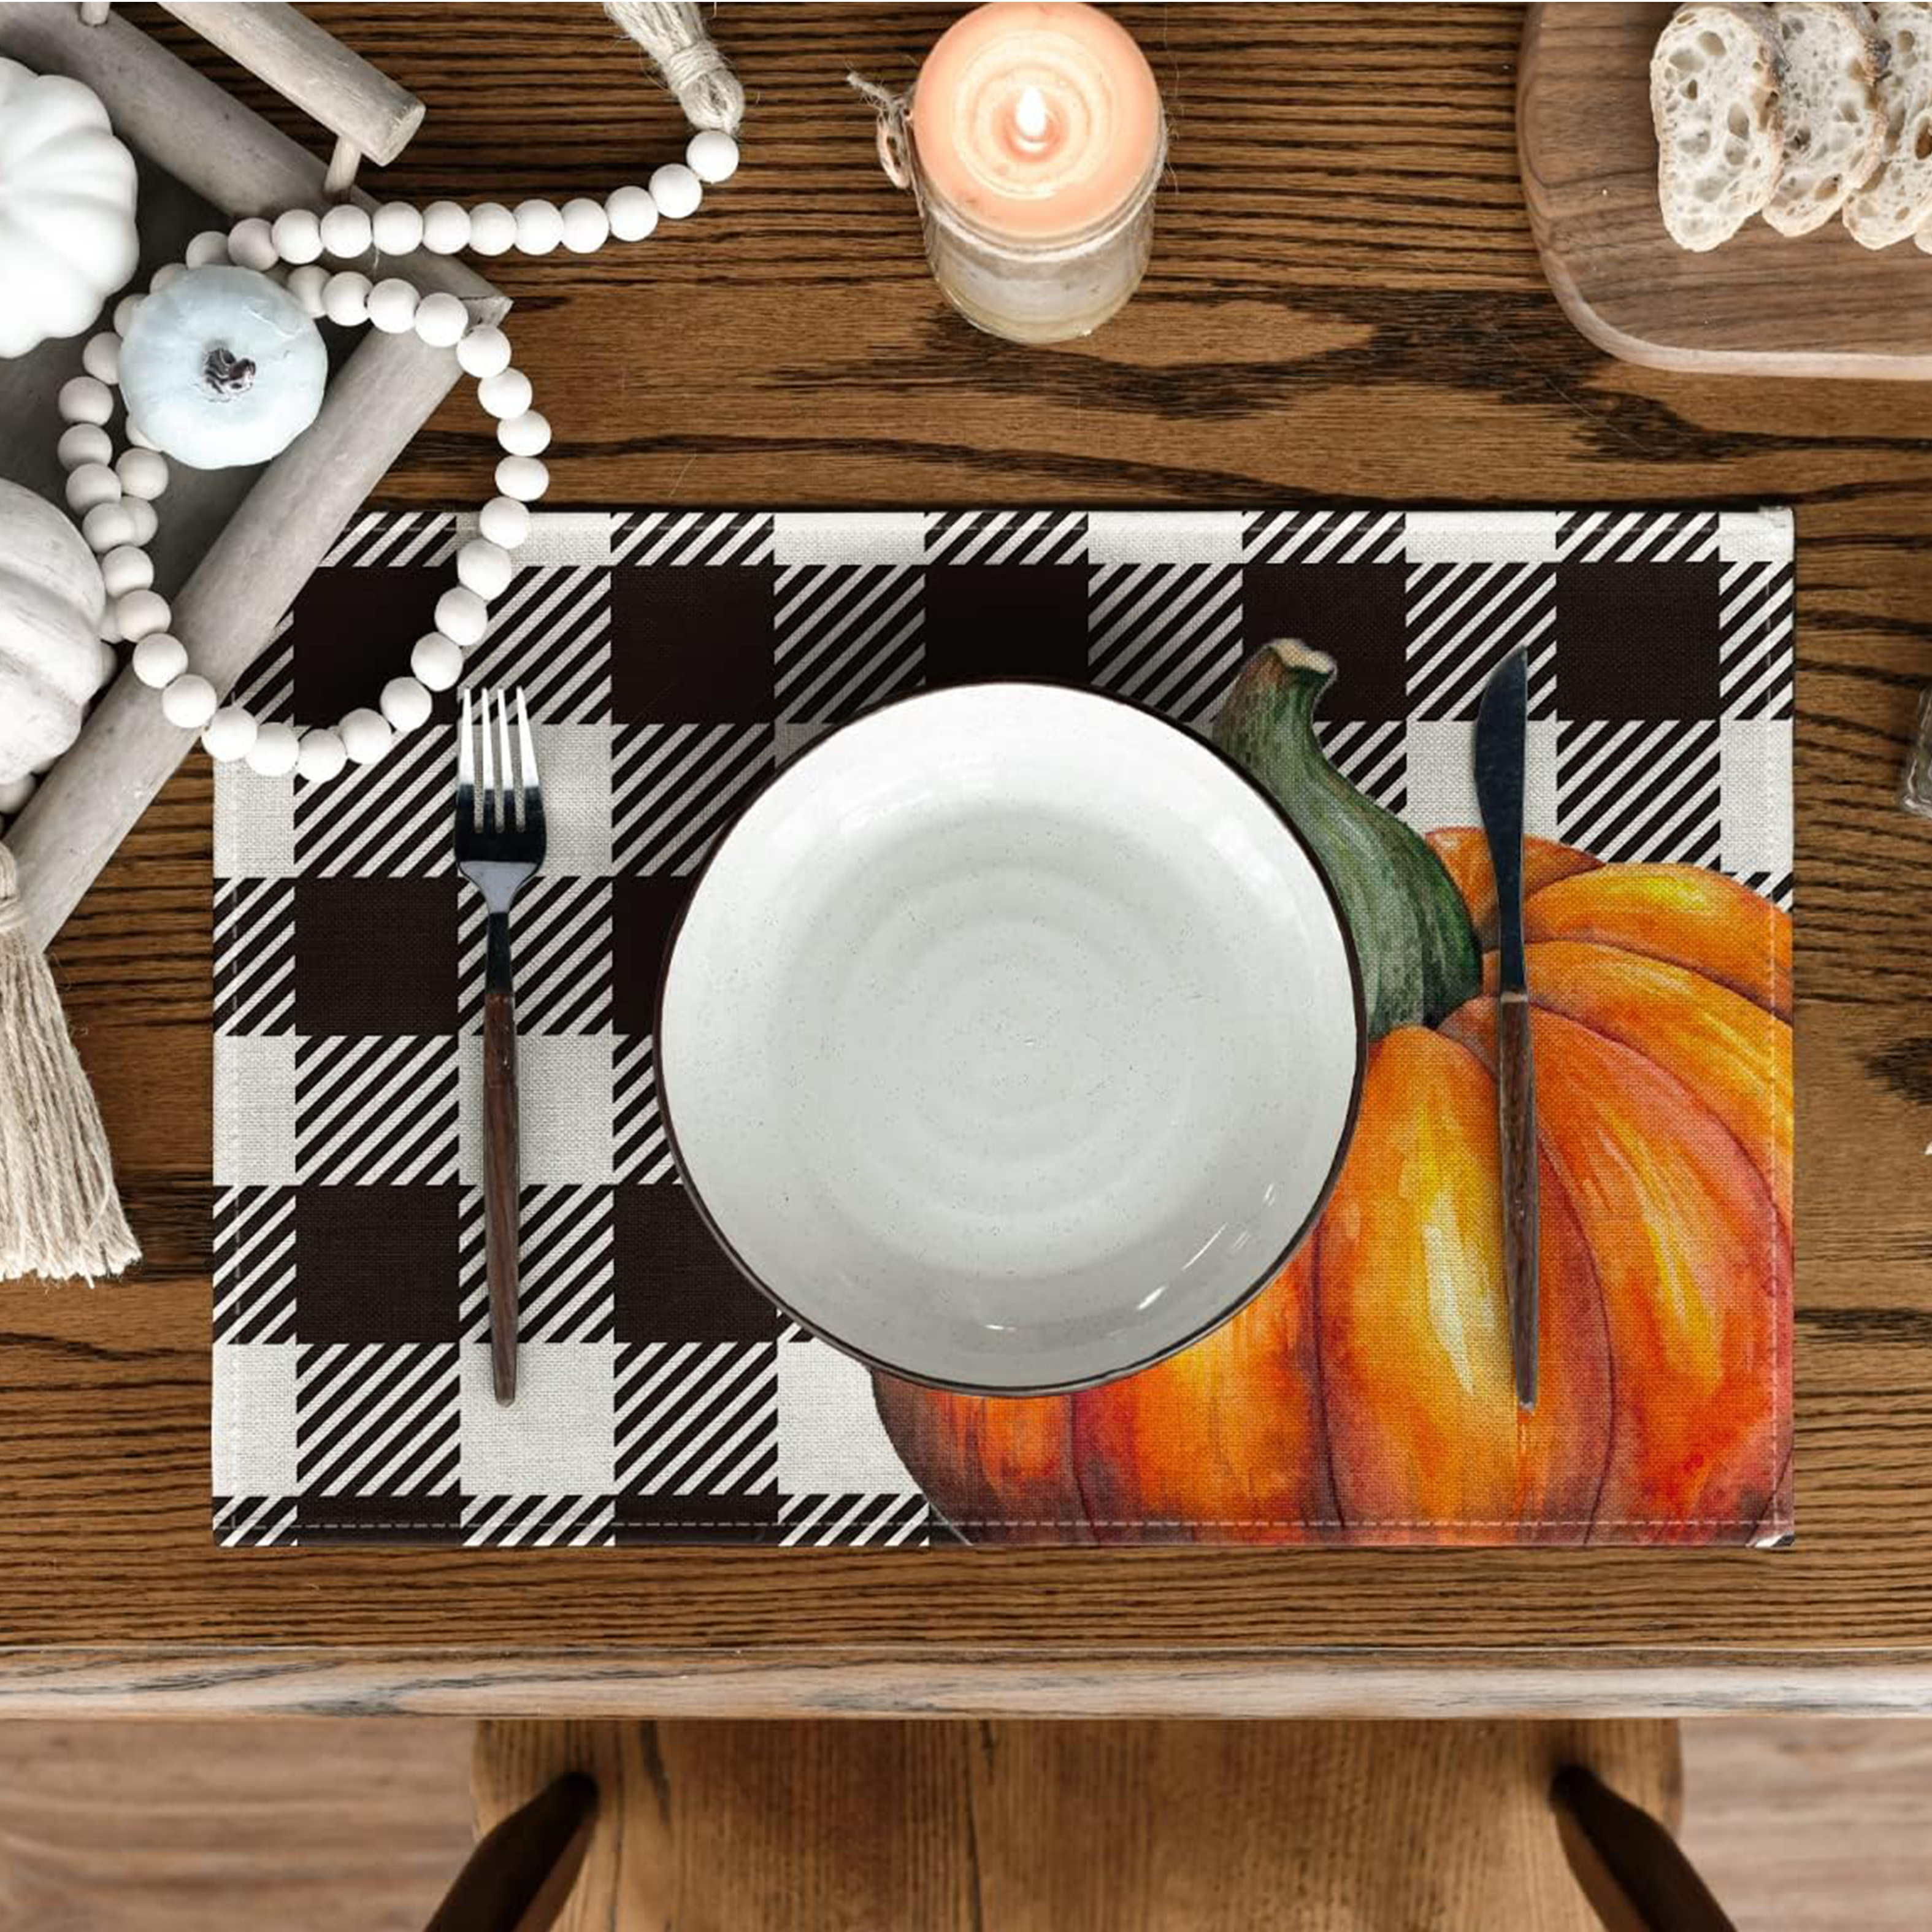 Manteles individuales de otoño para mesa de comedor, juego de 4 manteles  individuales a cuadros de búfalo naranja, decoración de otoño de Acción de  Gracias de granja para interiores y exteriores